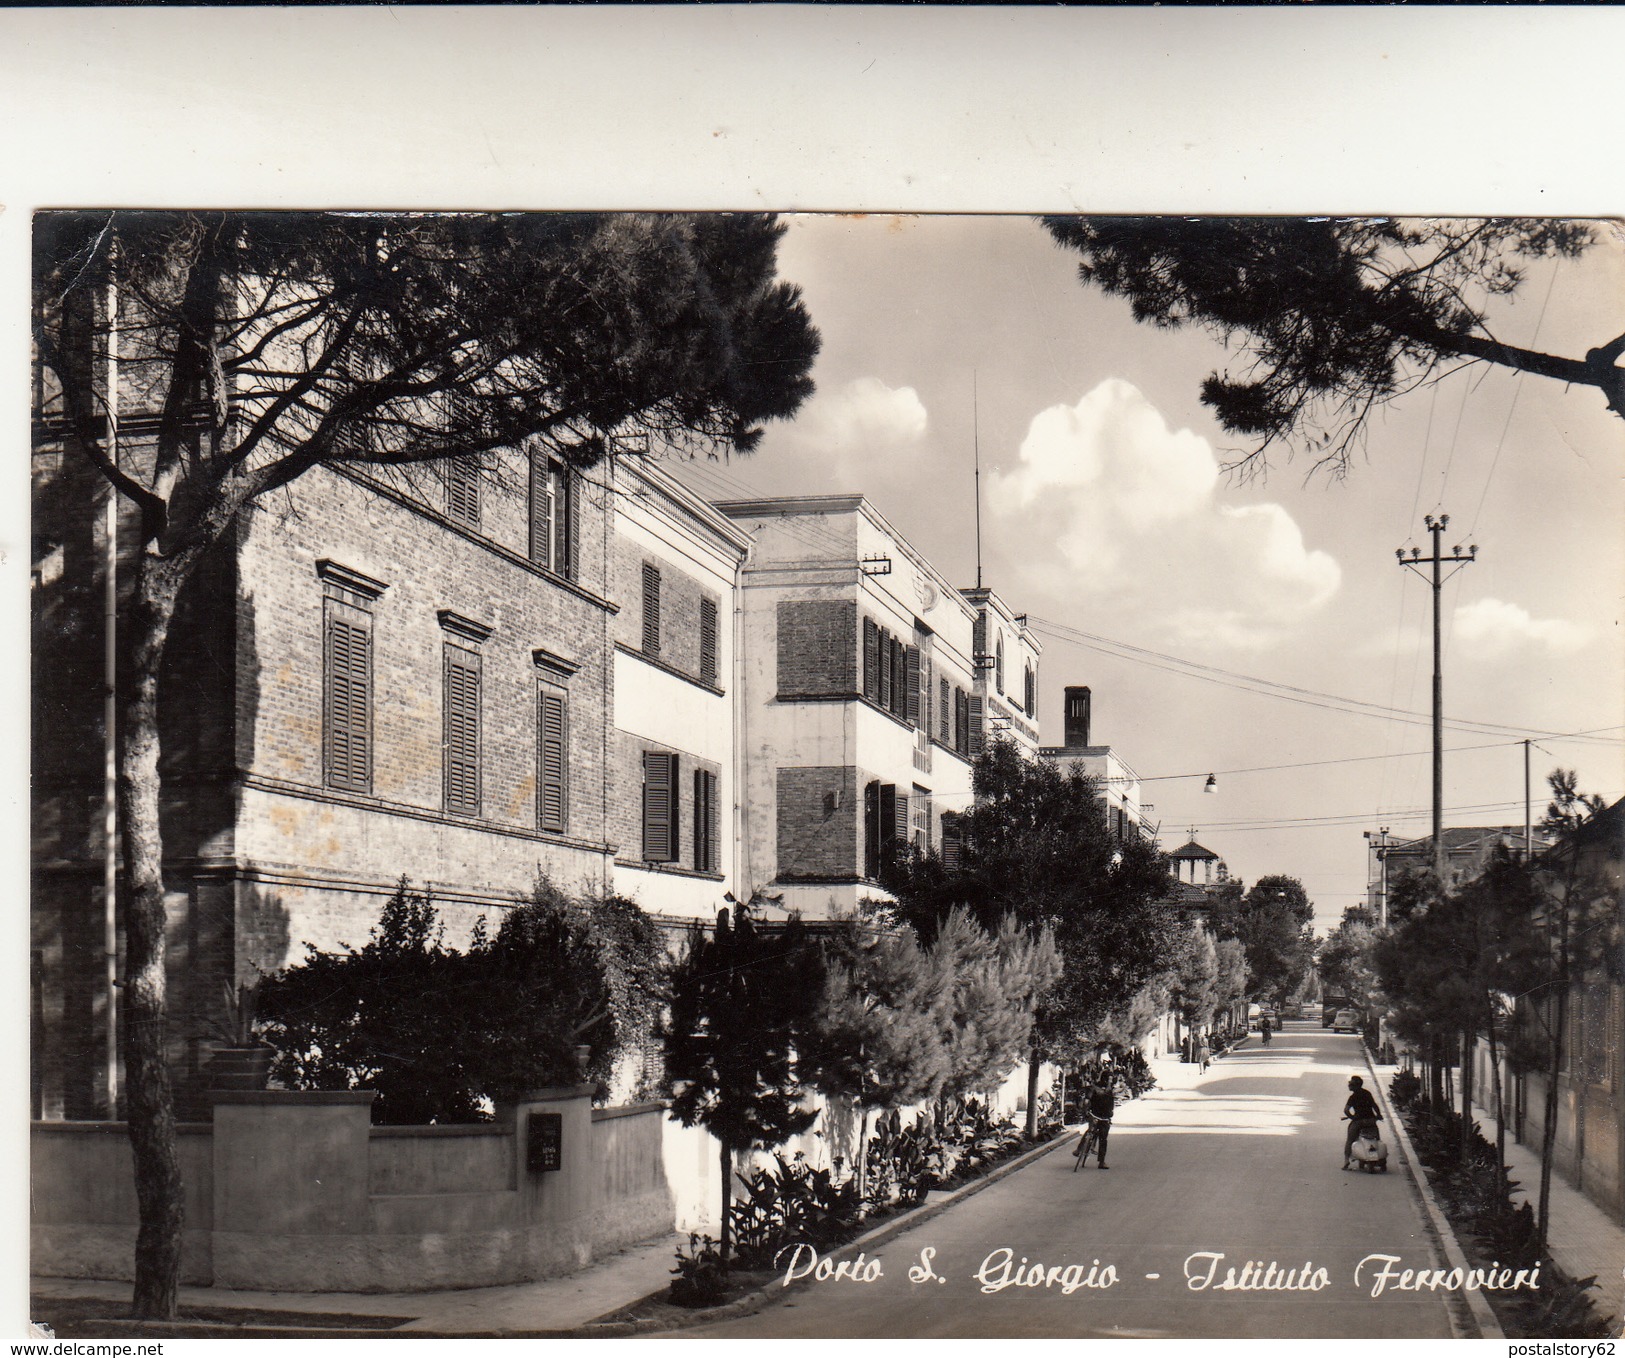 Porto San Giorgio, Istituto Ferrovieri. Cartolina Viaggiata 1963 - Ascoli Piceno